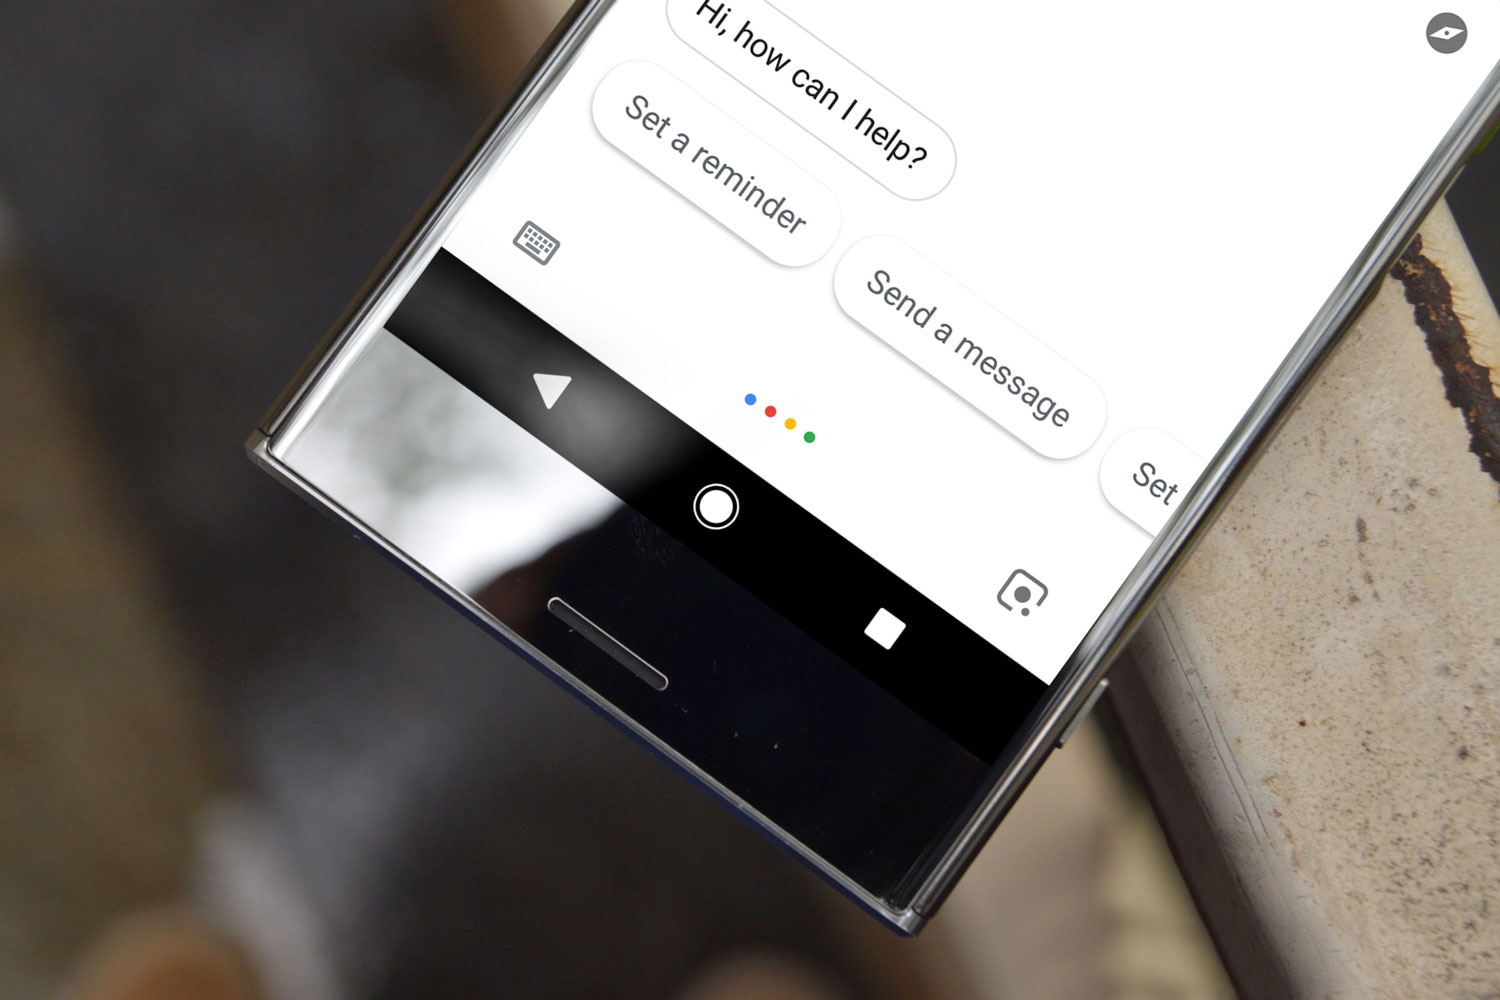 کاربران می توانند با استفاده از Google assistant تماس تصویری برقرار کنند